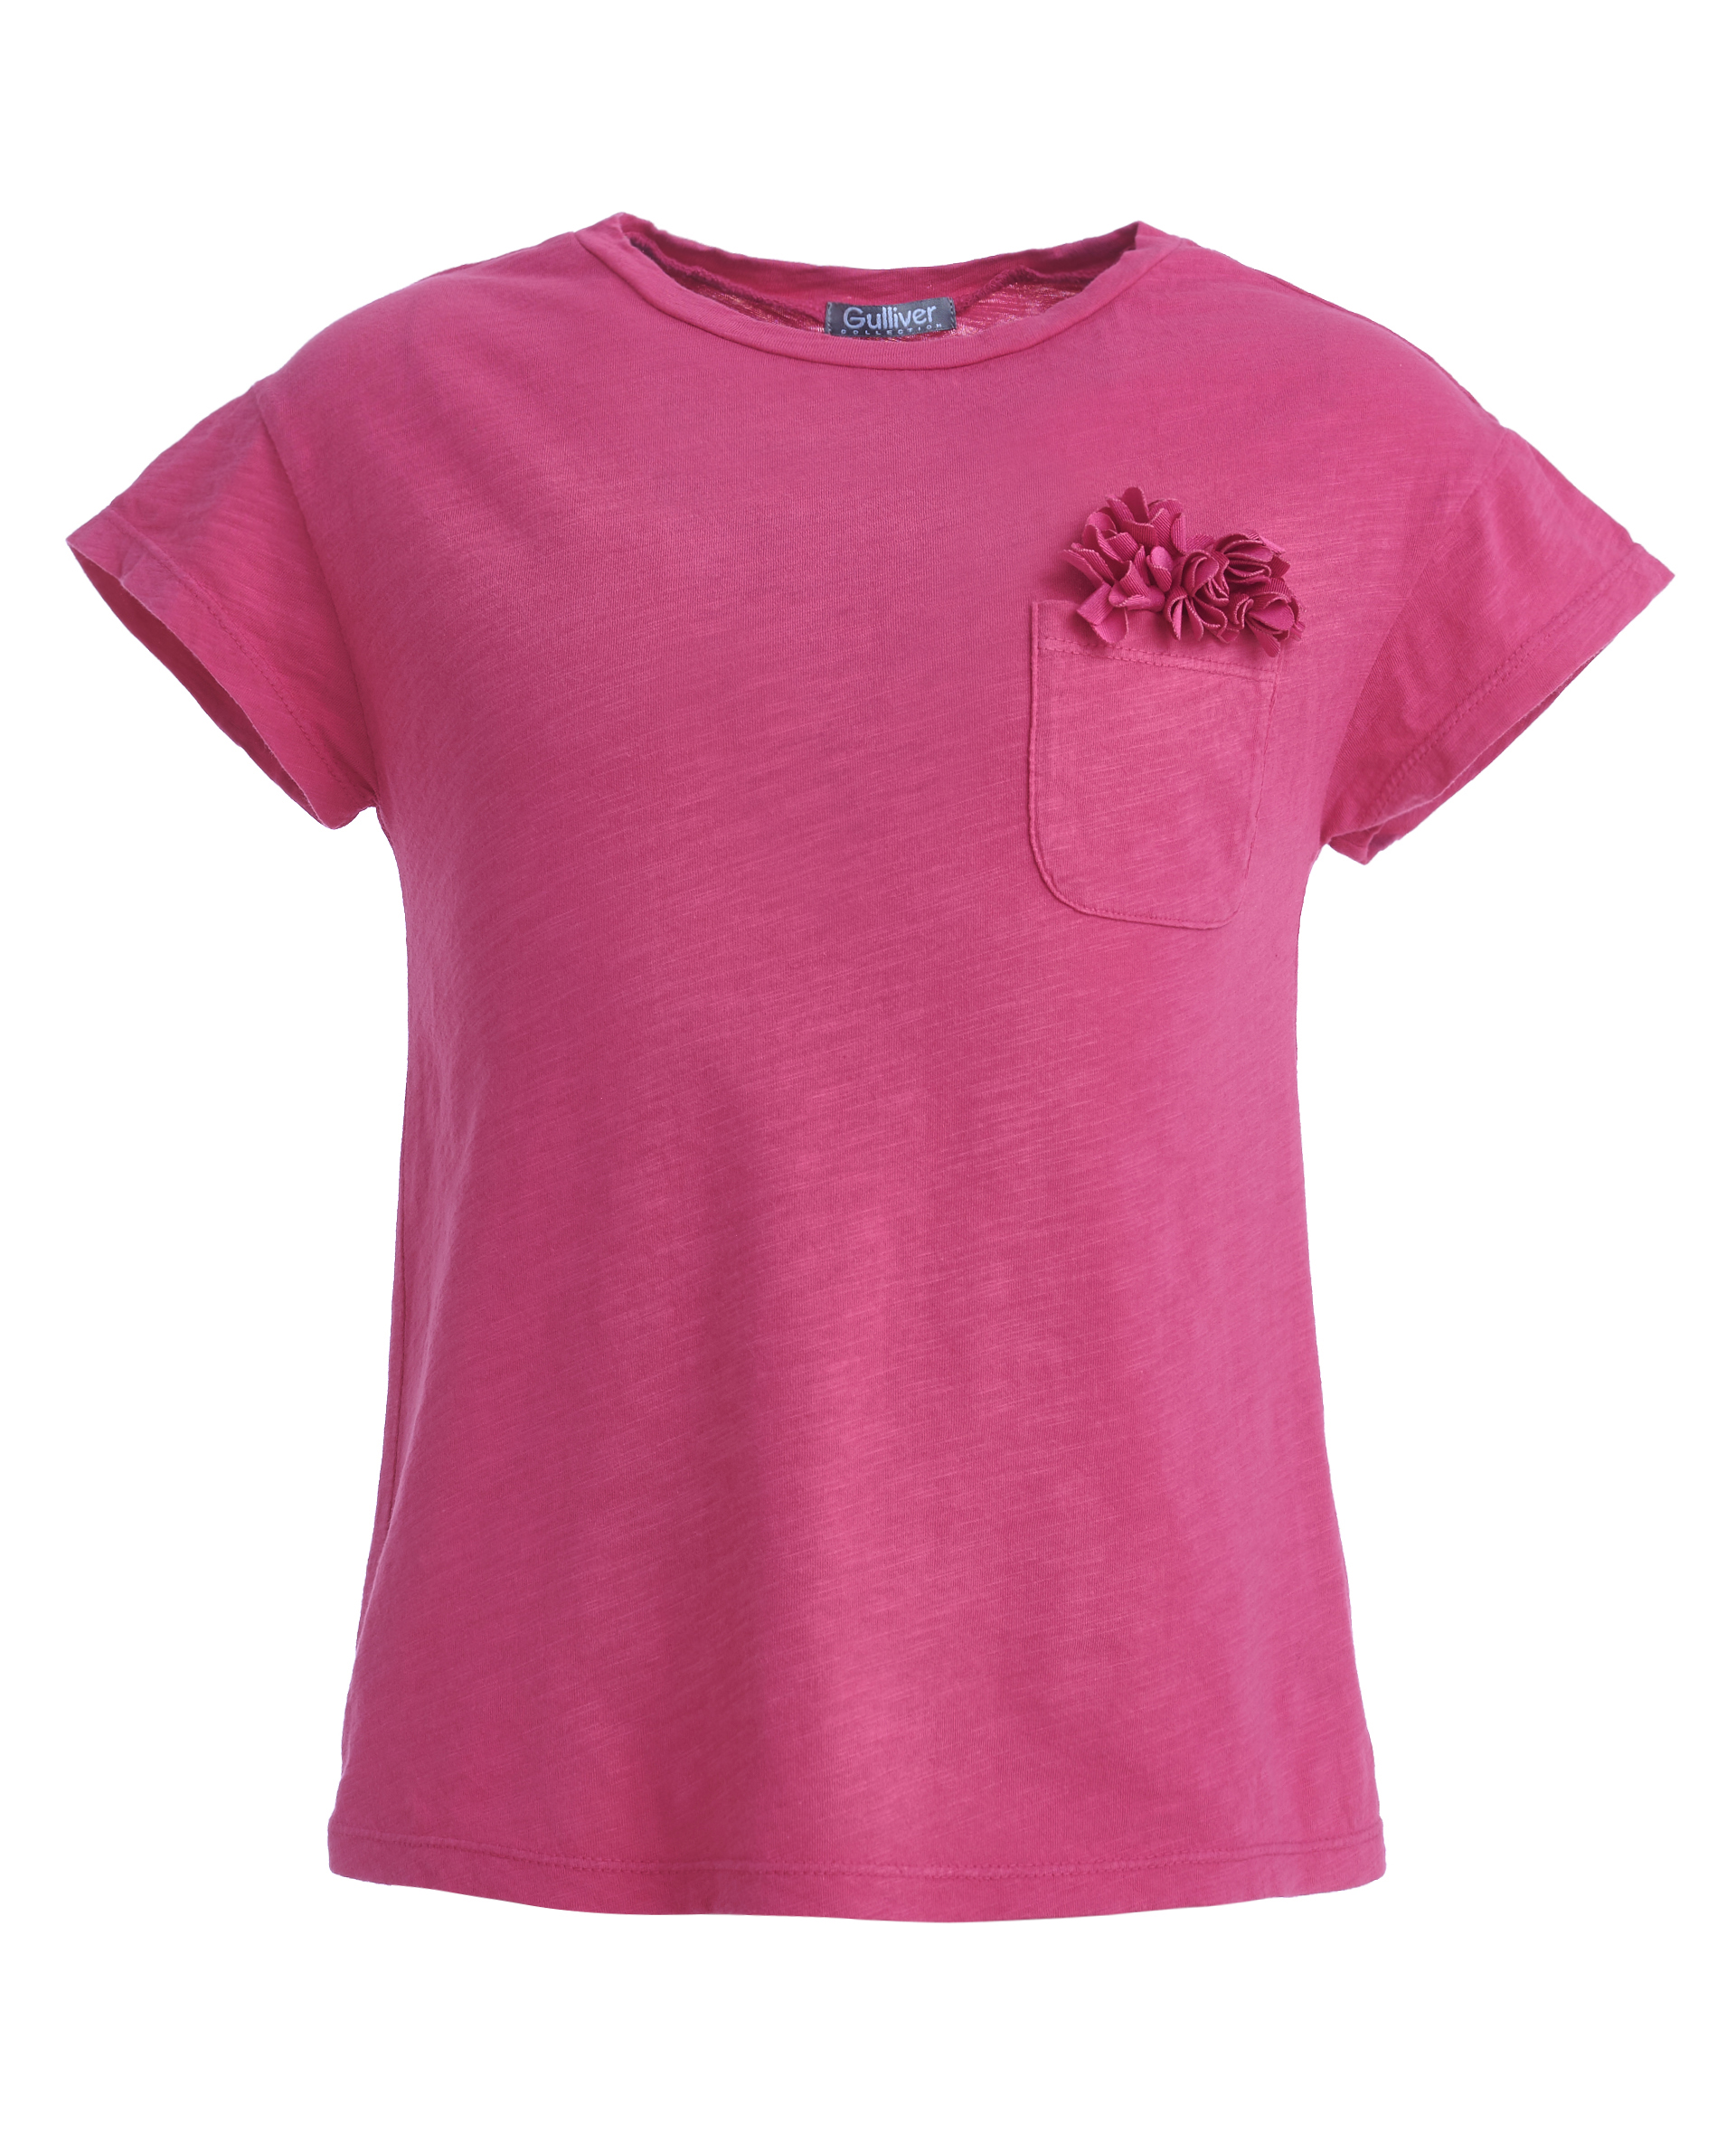 11902GMC1209, Розовая футболка, декорированная цветами Gulliver, розовый, 98, Женский, ВЕСНА/ЛЕТО 2019  - купить со скидкой